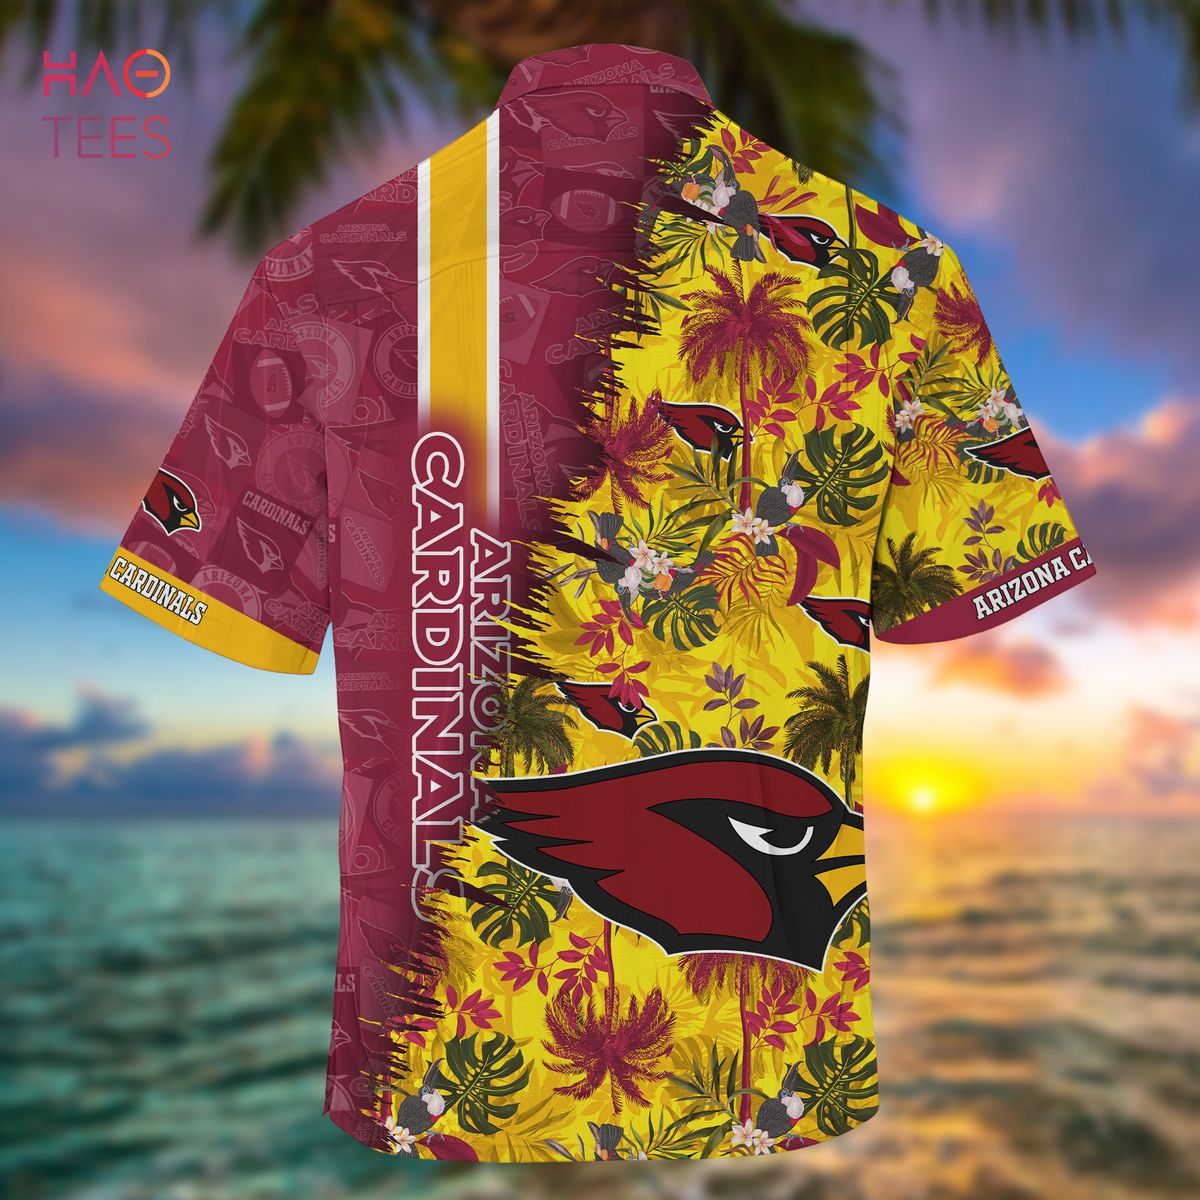 Personalized Arizona Cardinals NFL Summer Hawaiian Shirt And Shorts